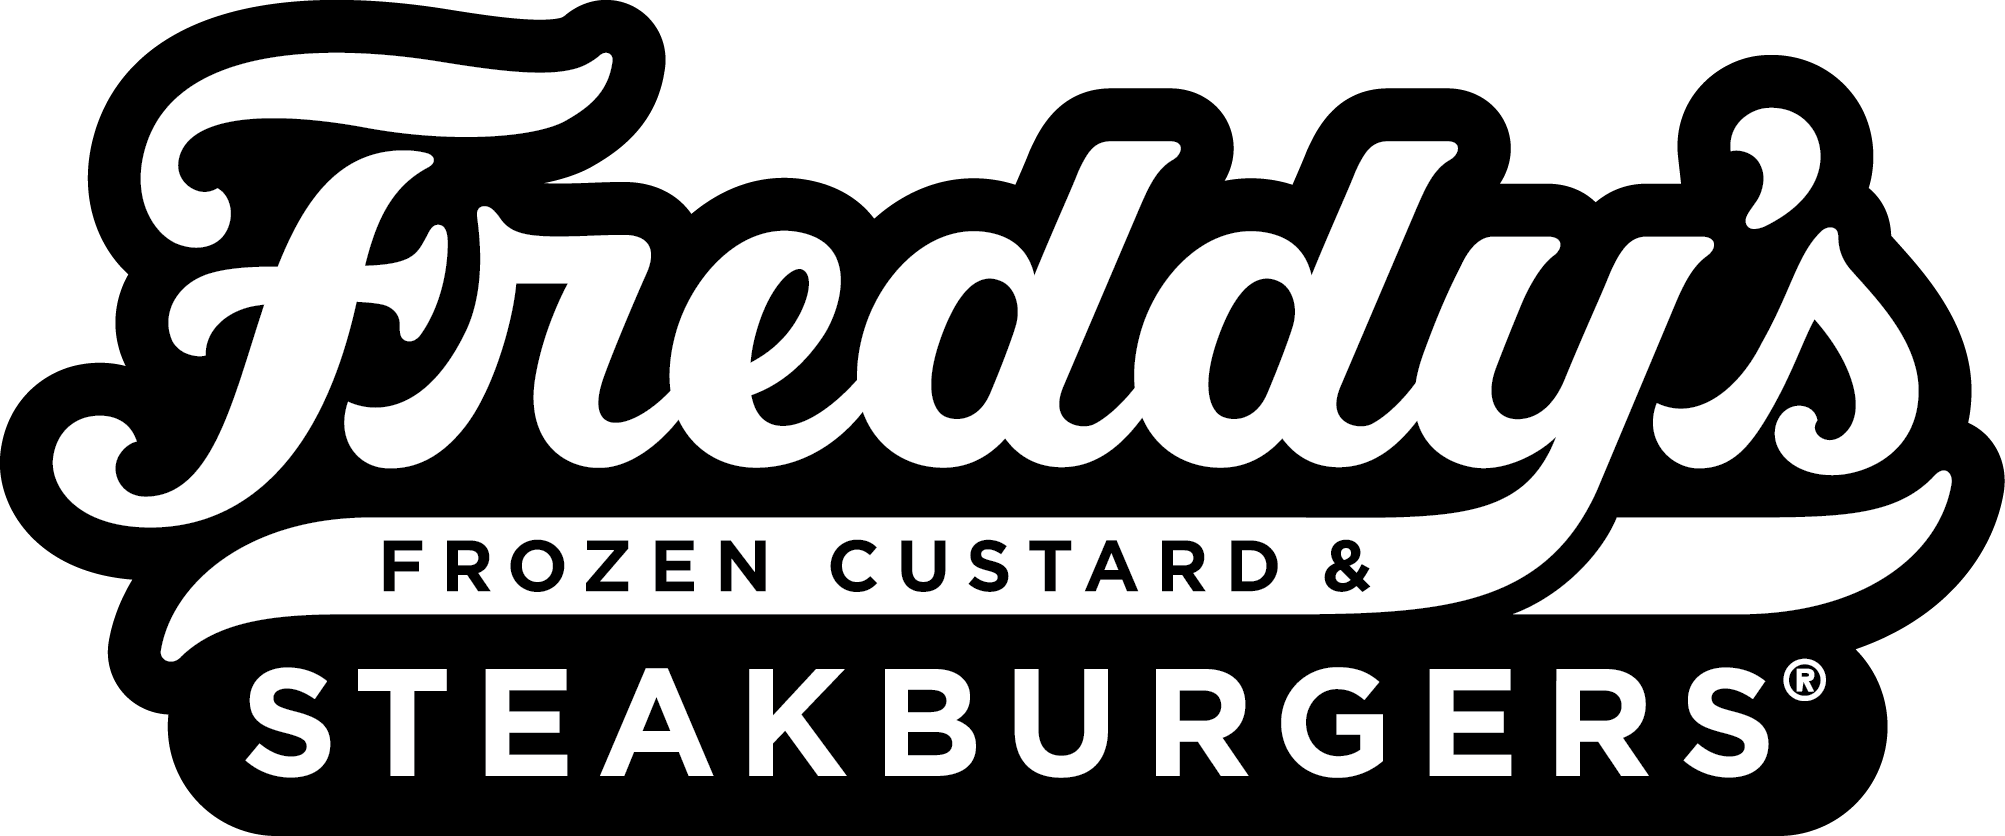 Freddy's Logo - Graphics Library - Freddy's Frozen Custard & Steakburgers